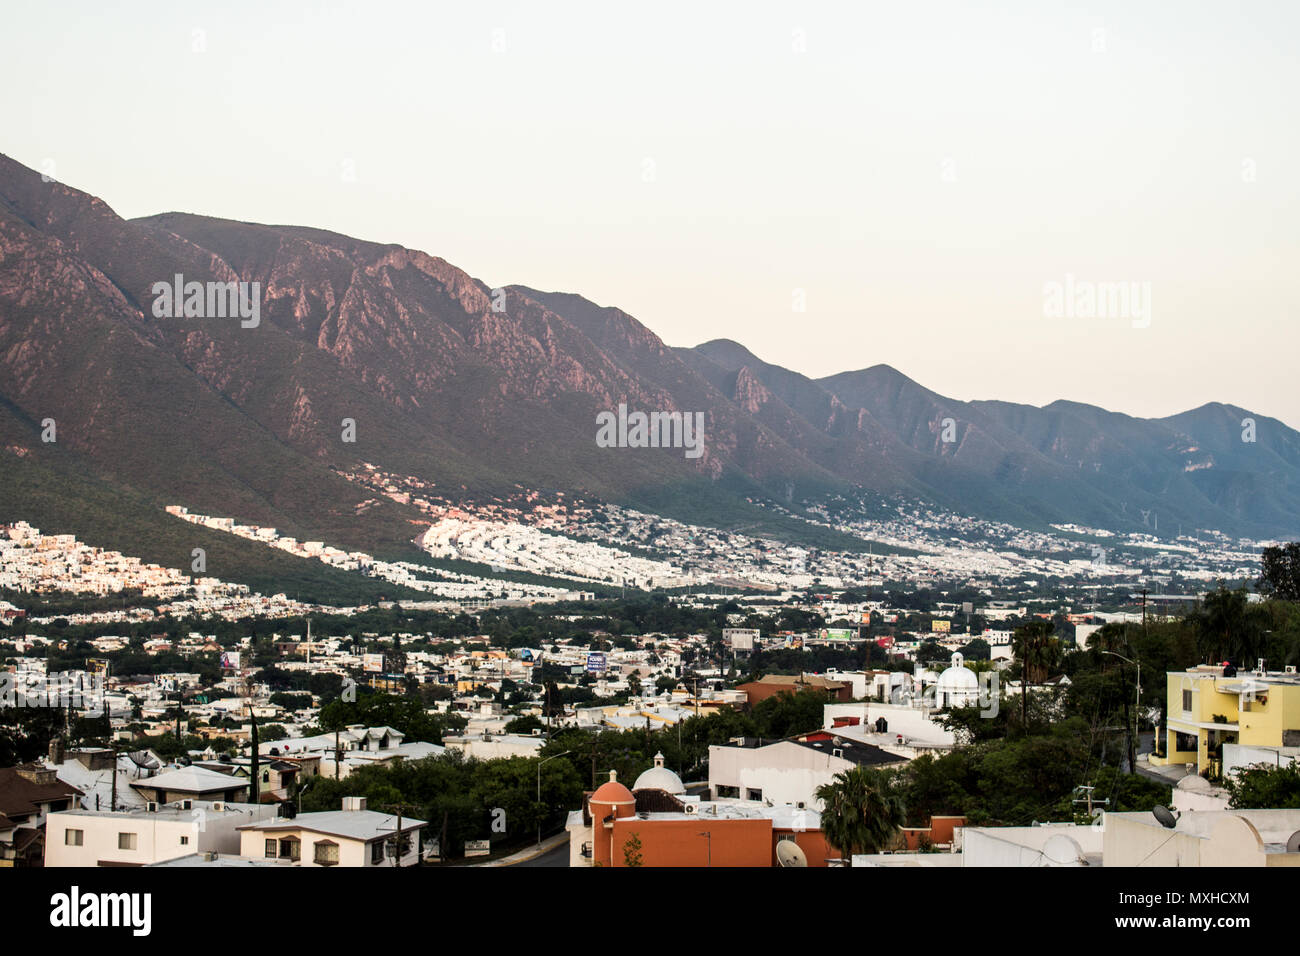 La parte sur de la ciudad de Monterrey, Nuevo León, México. Foto de stock